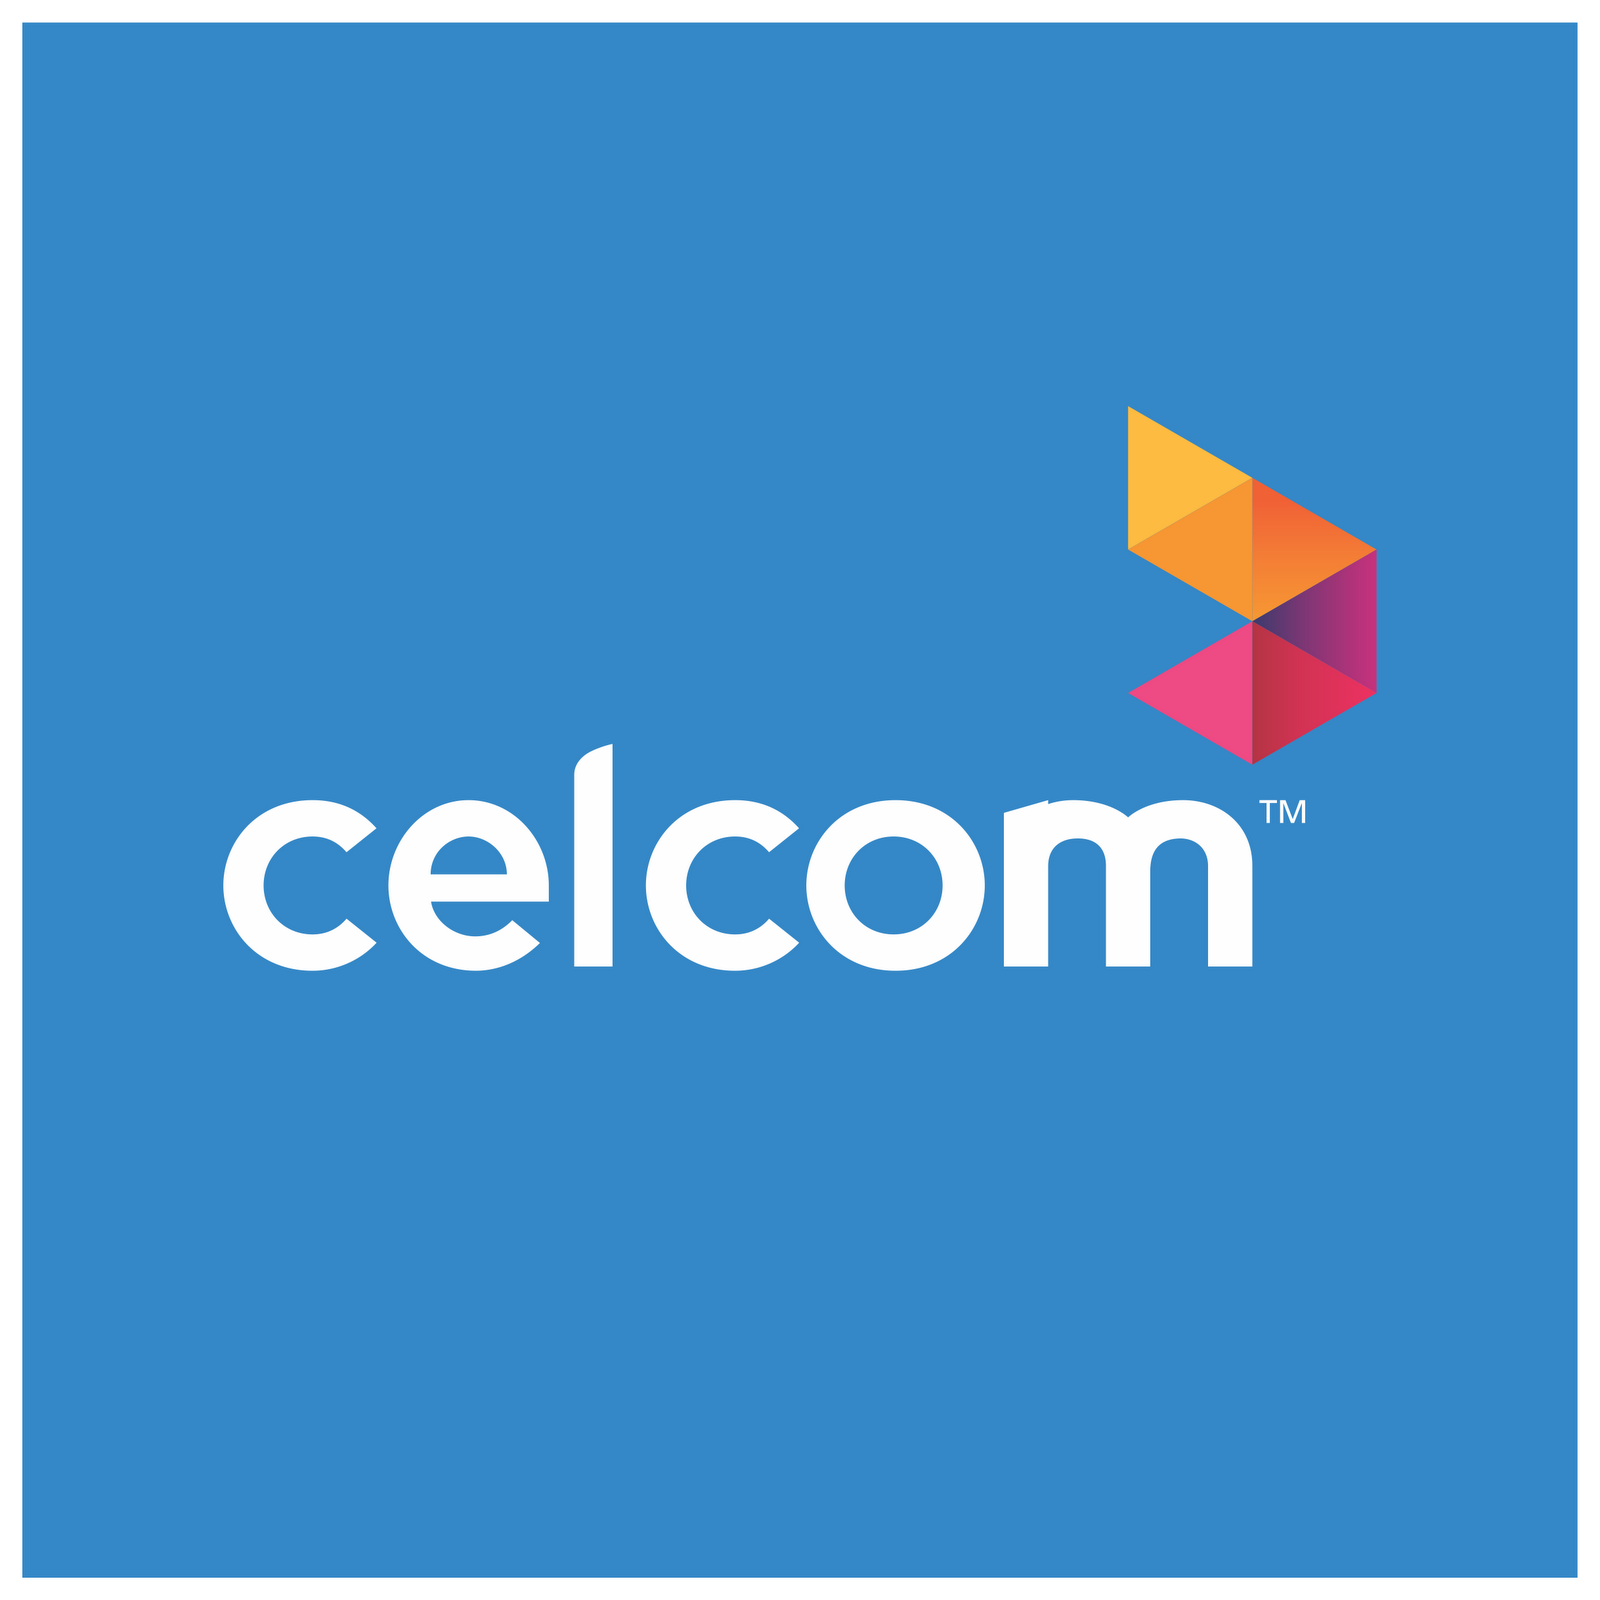 celcom Logo photo - 1